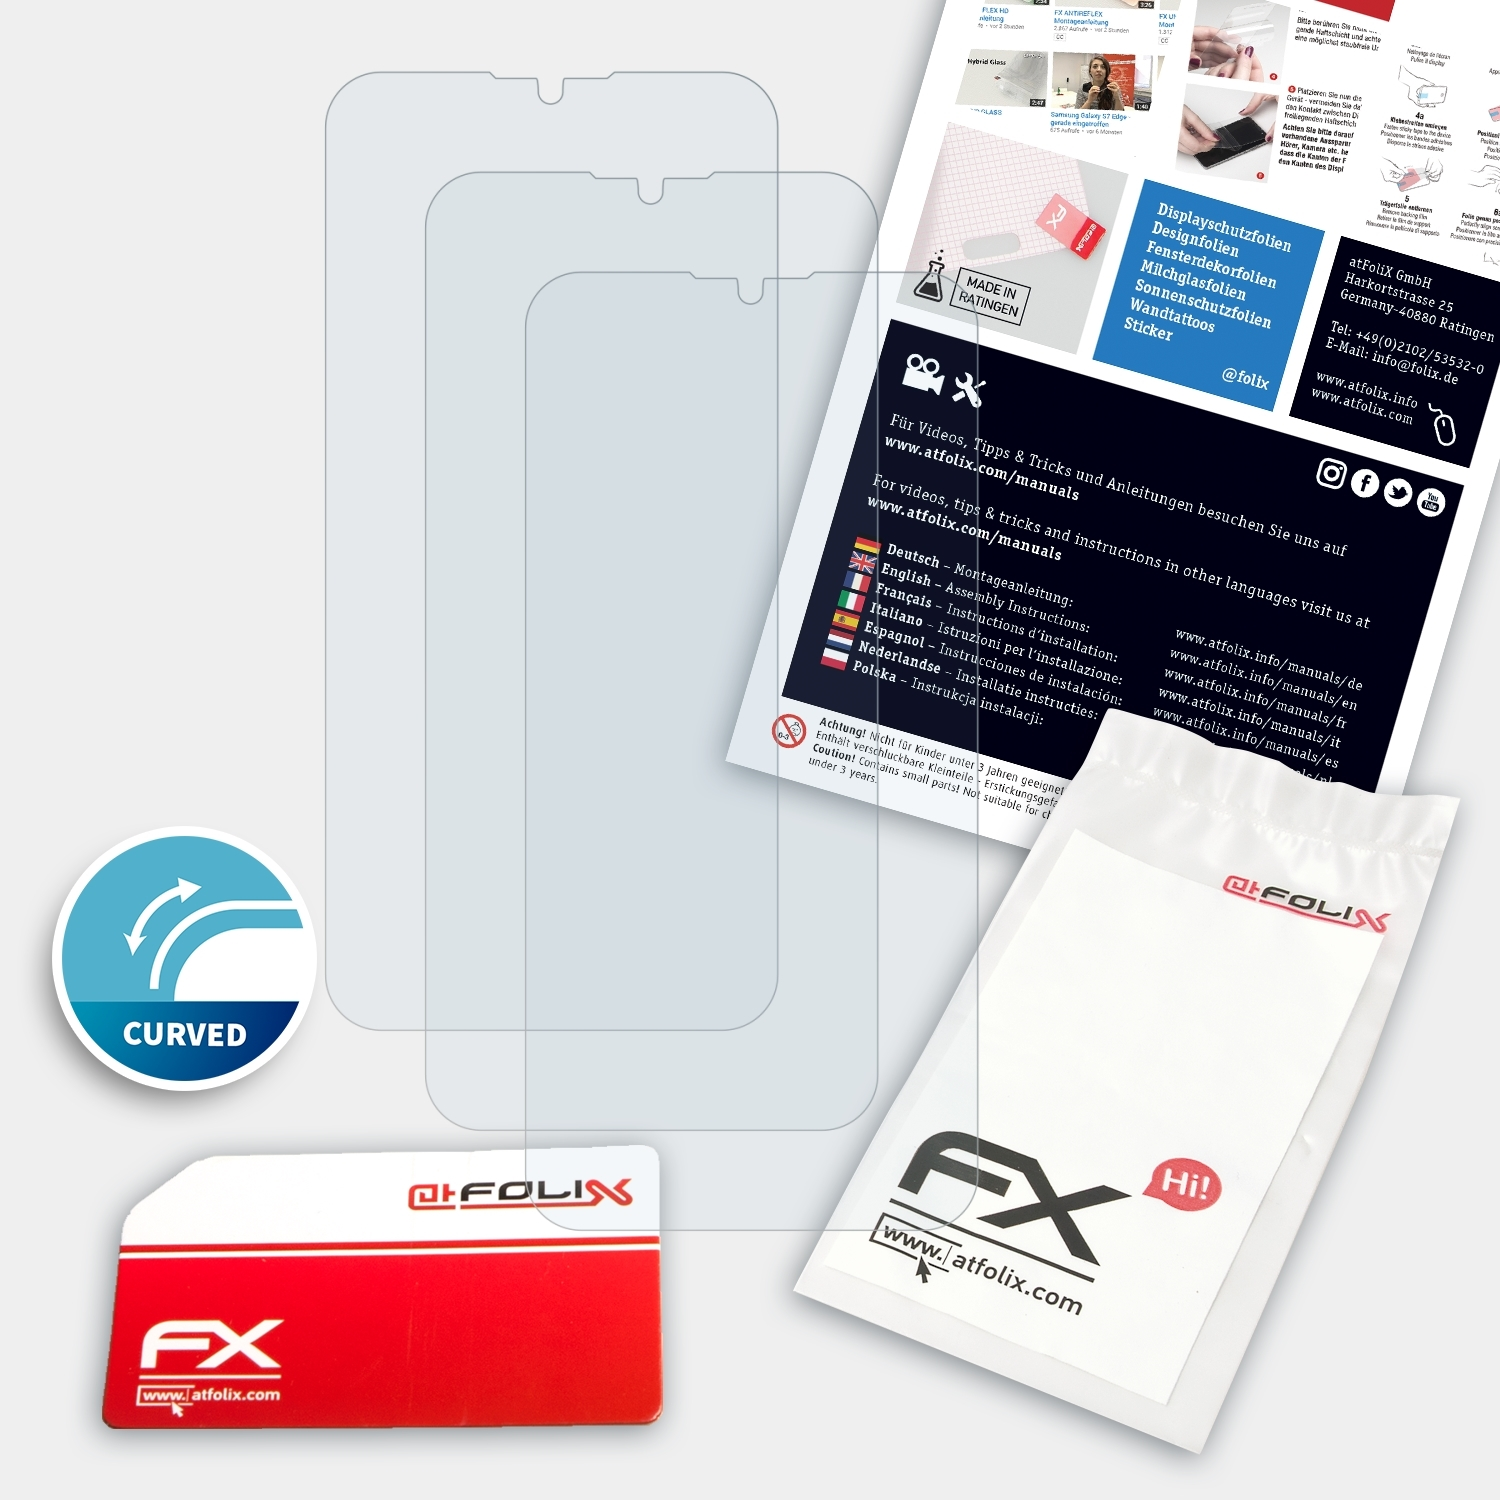 FX-ActiFleX ZTE 3x Displayschutz(für V10) ATFOLIX Blade